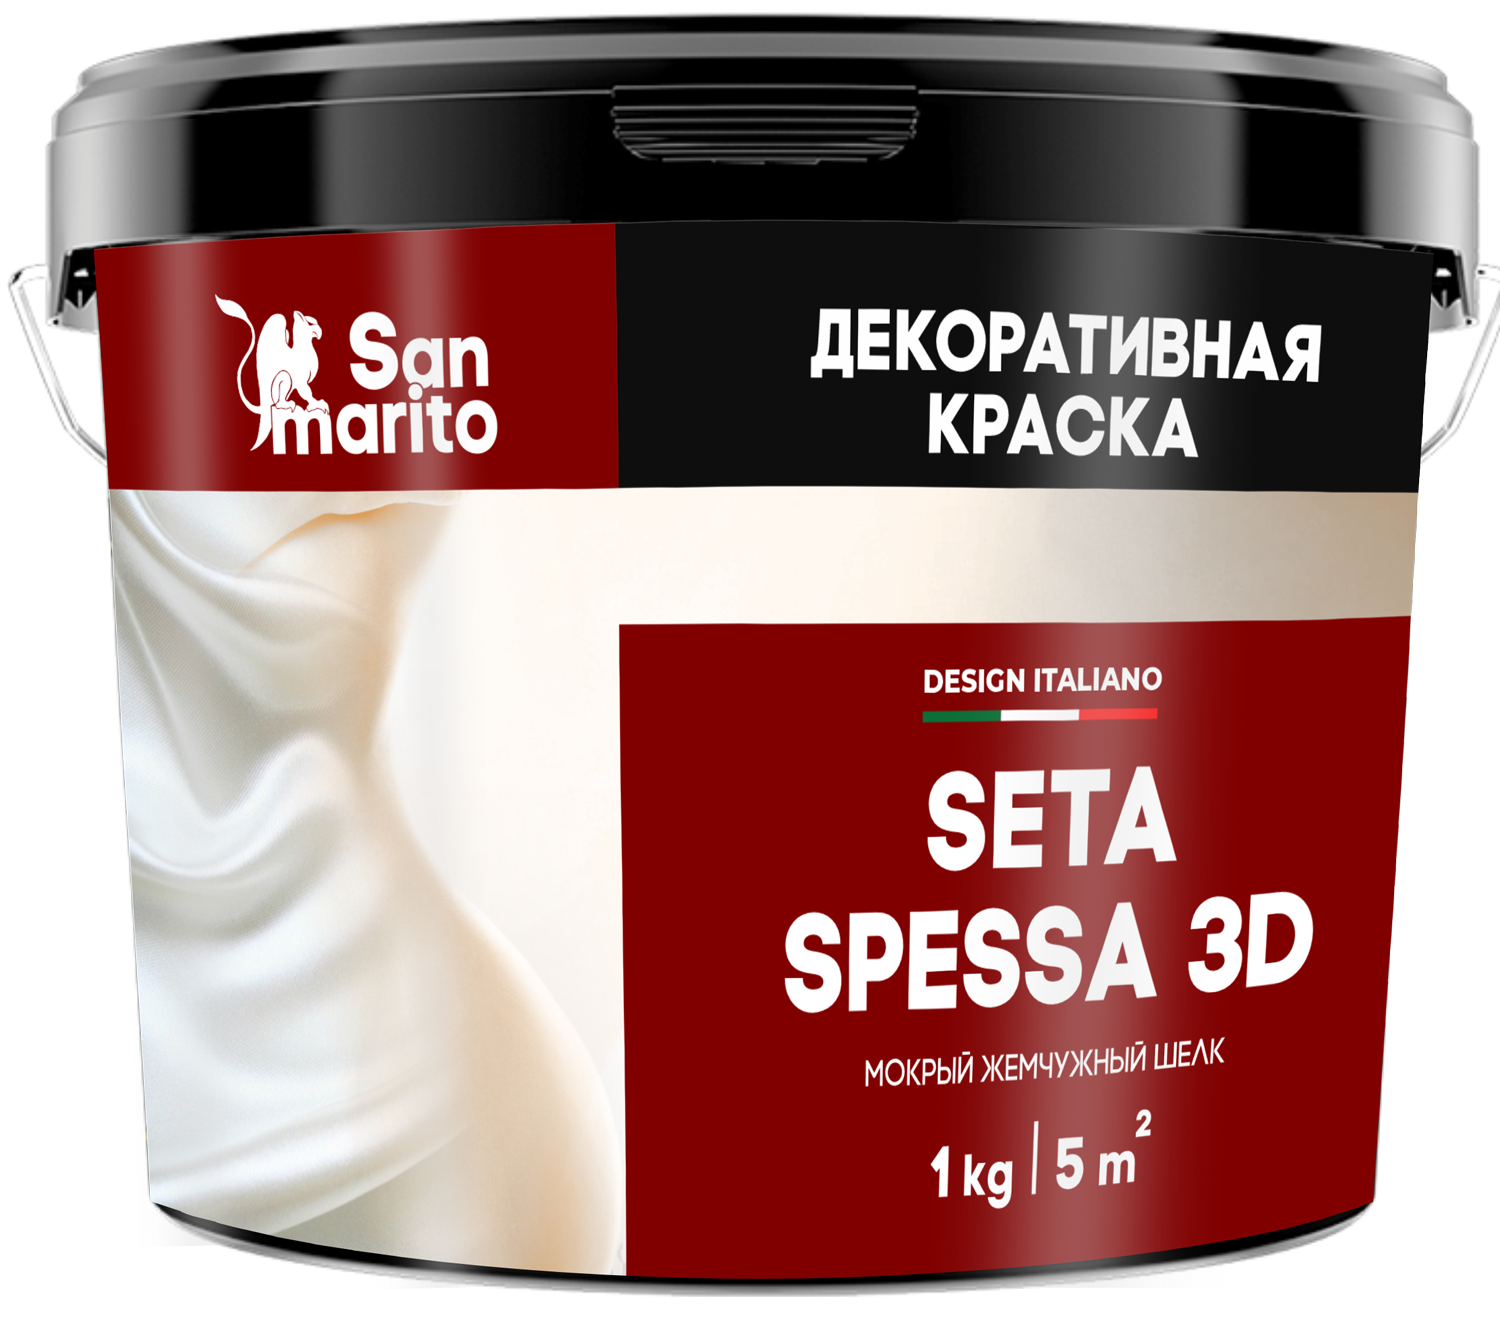 Краска декоративная с эффектом мокрого жемчужного шелка "San Marito Seta Spessa 3D" 1кг